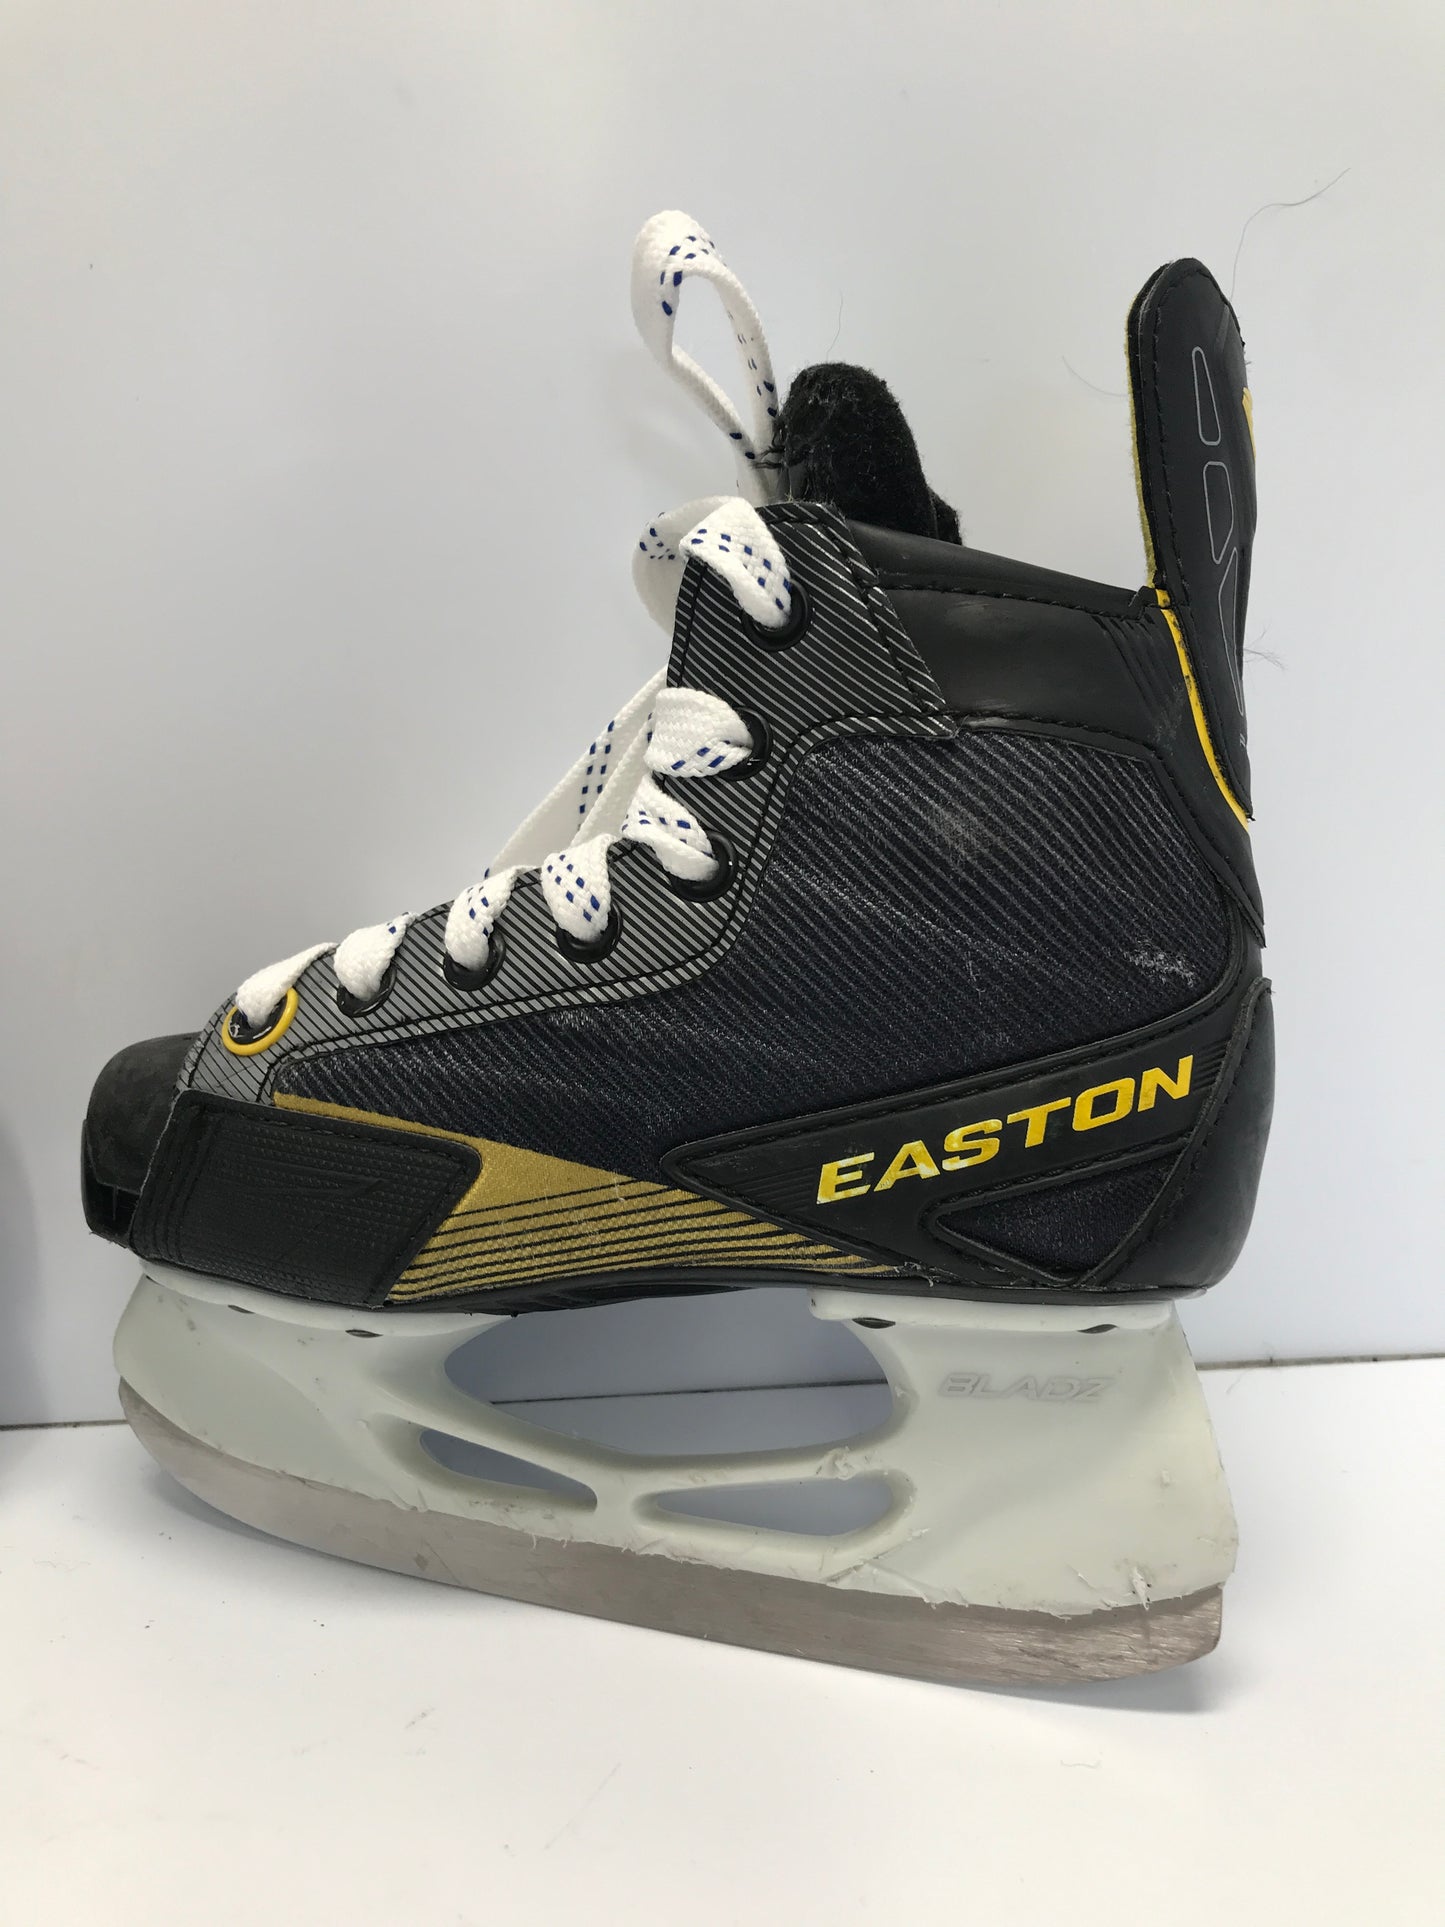 Hockey Skates Child Size 12.5 Shoe Size 11.5 Skate Size Easton Black Gold